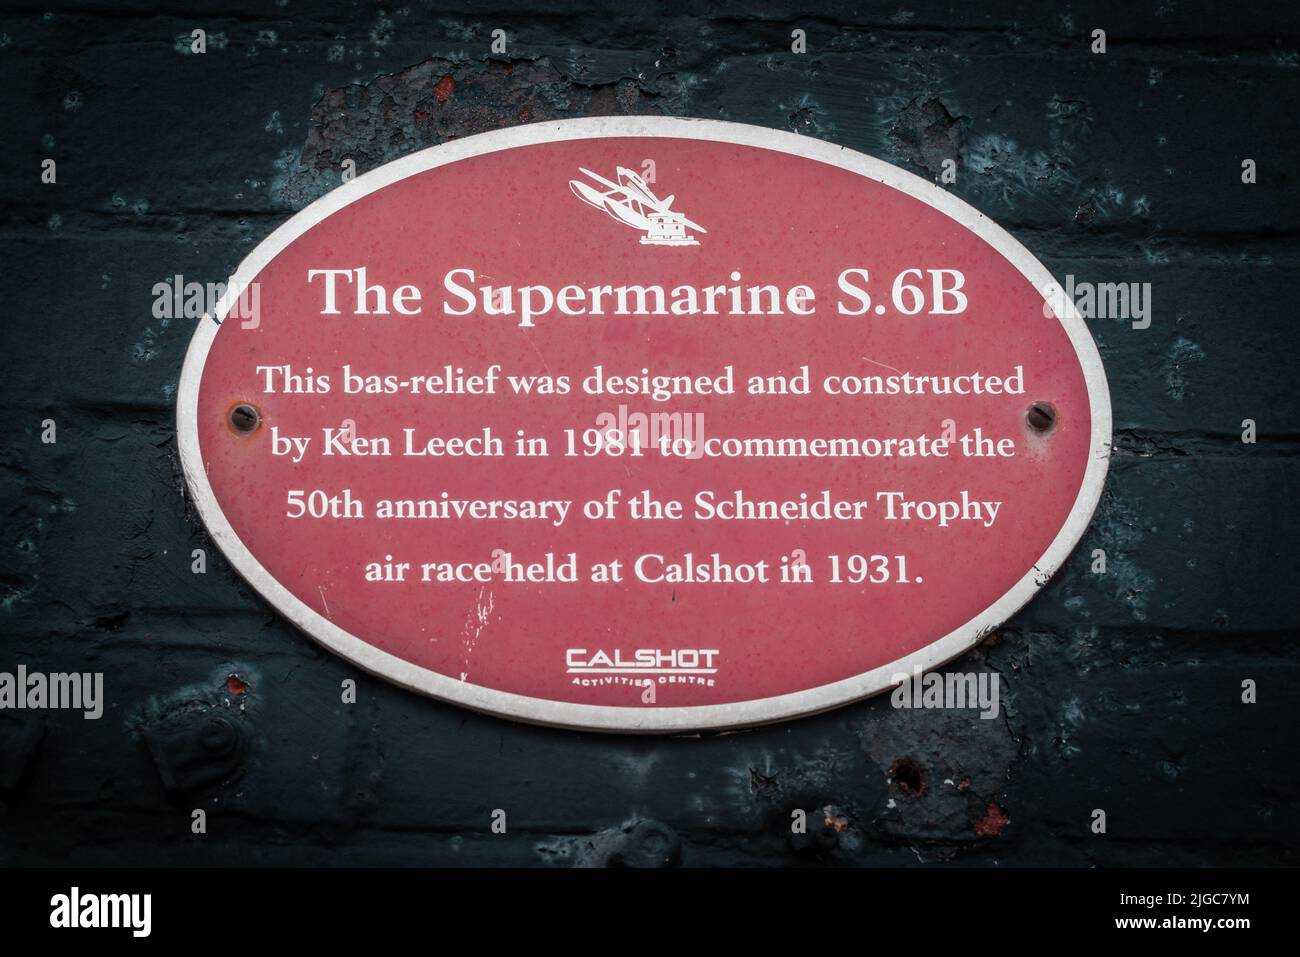 Plaque commémorative, conçue par Ken Leech, pour le 50th anniversaire de la course aérienne Schneider Trophy à Calshot 1931, Southampton, Angleterre, Royaume-Uni Banque D'Images